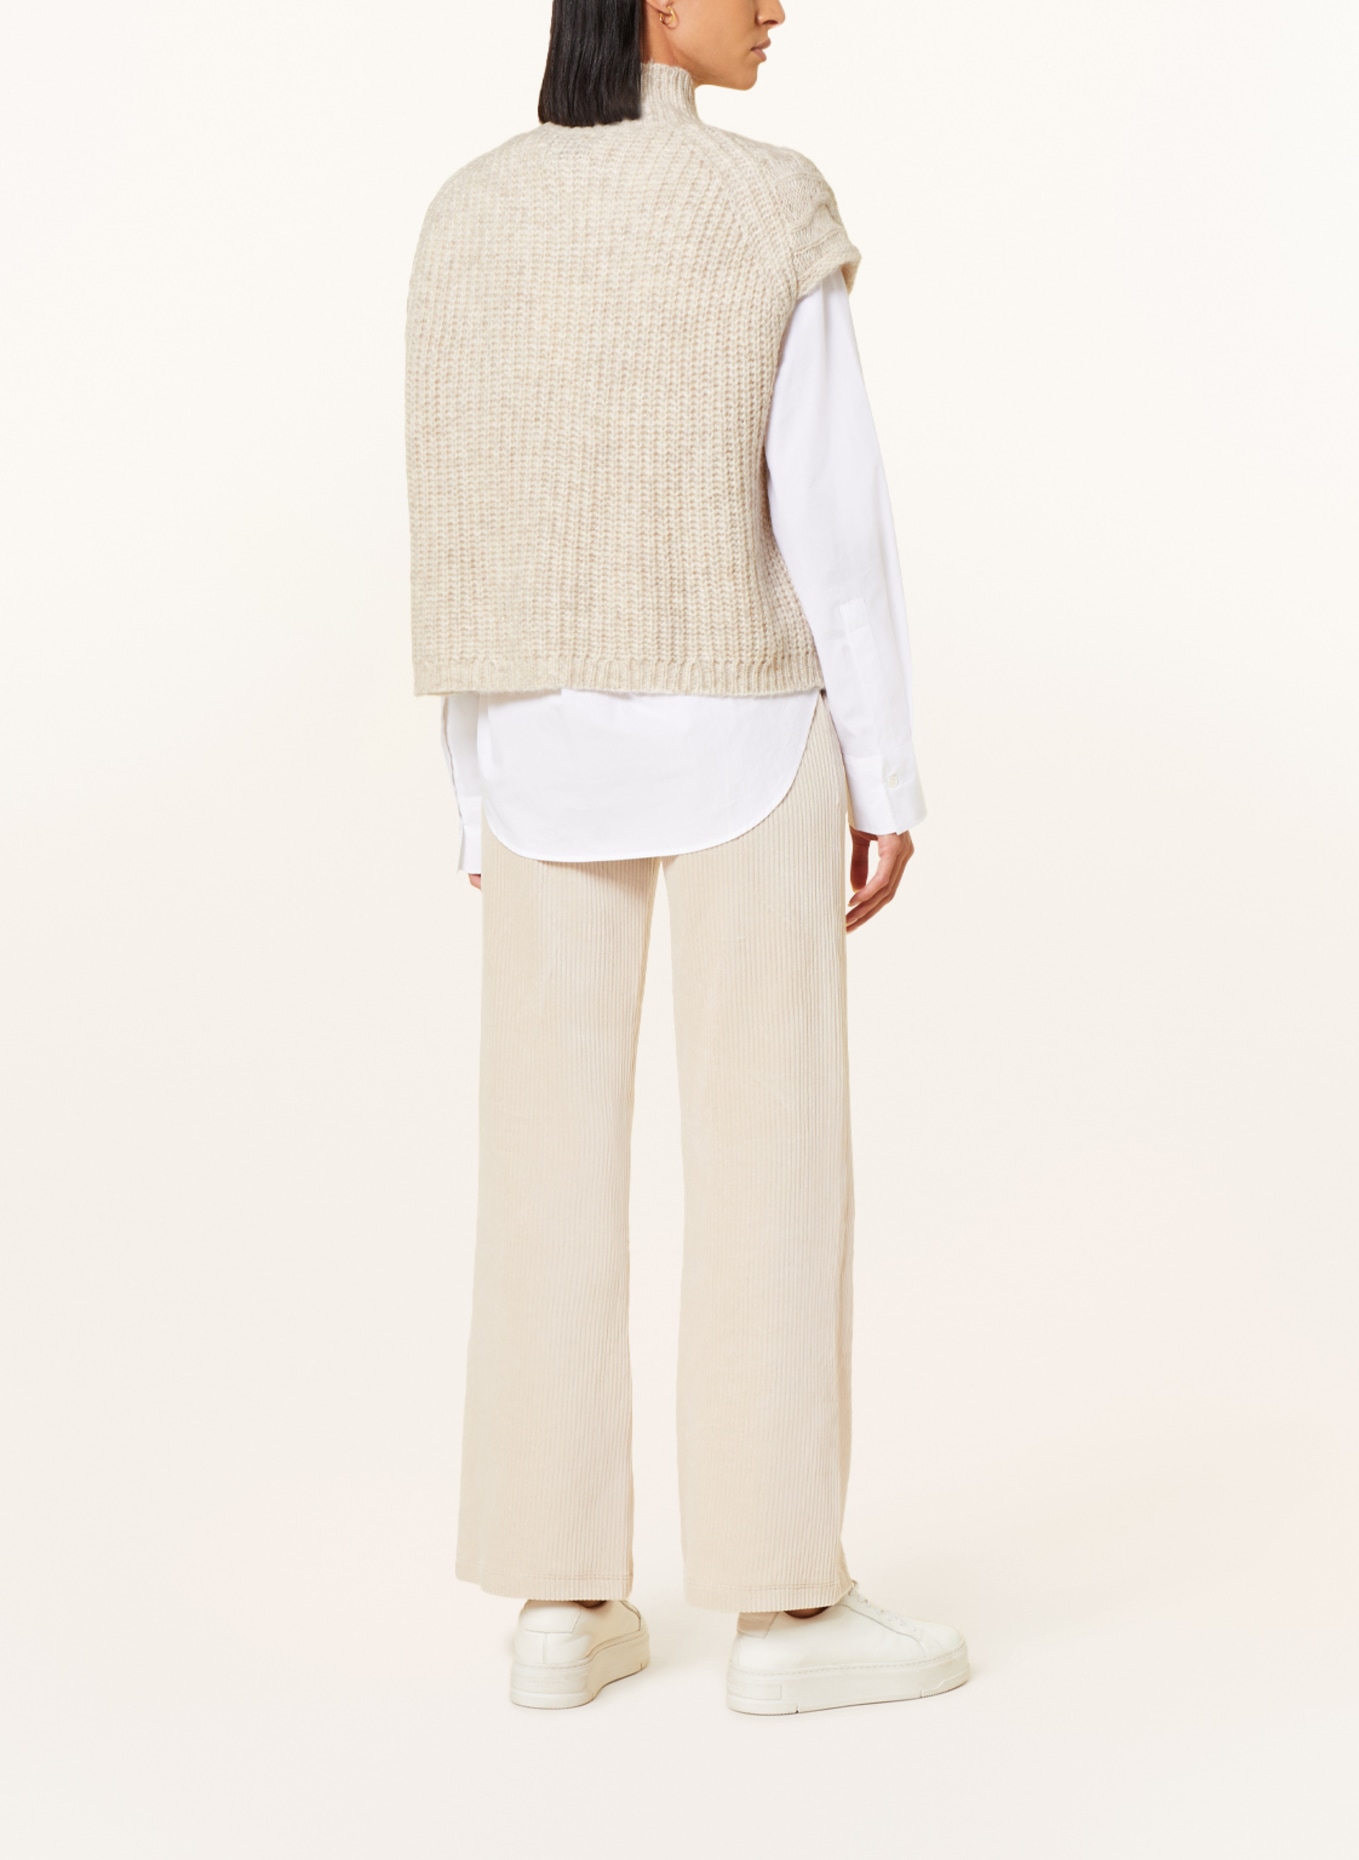 MRS & HUGS Sweater vest, Color: CREAM (Image 3)